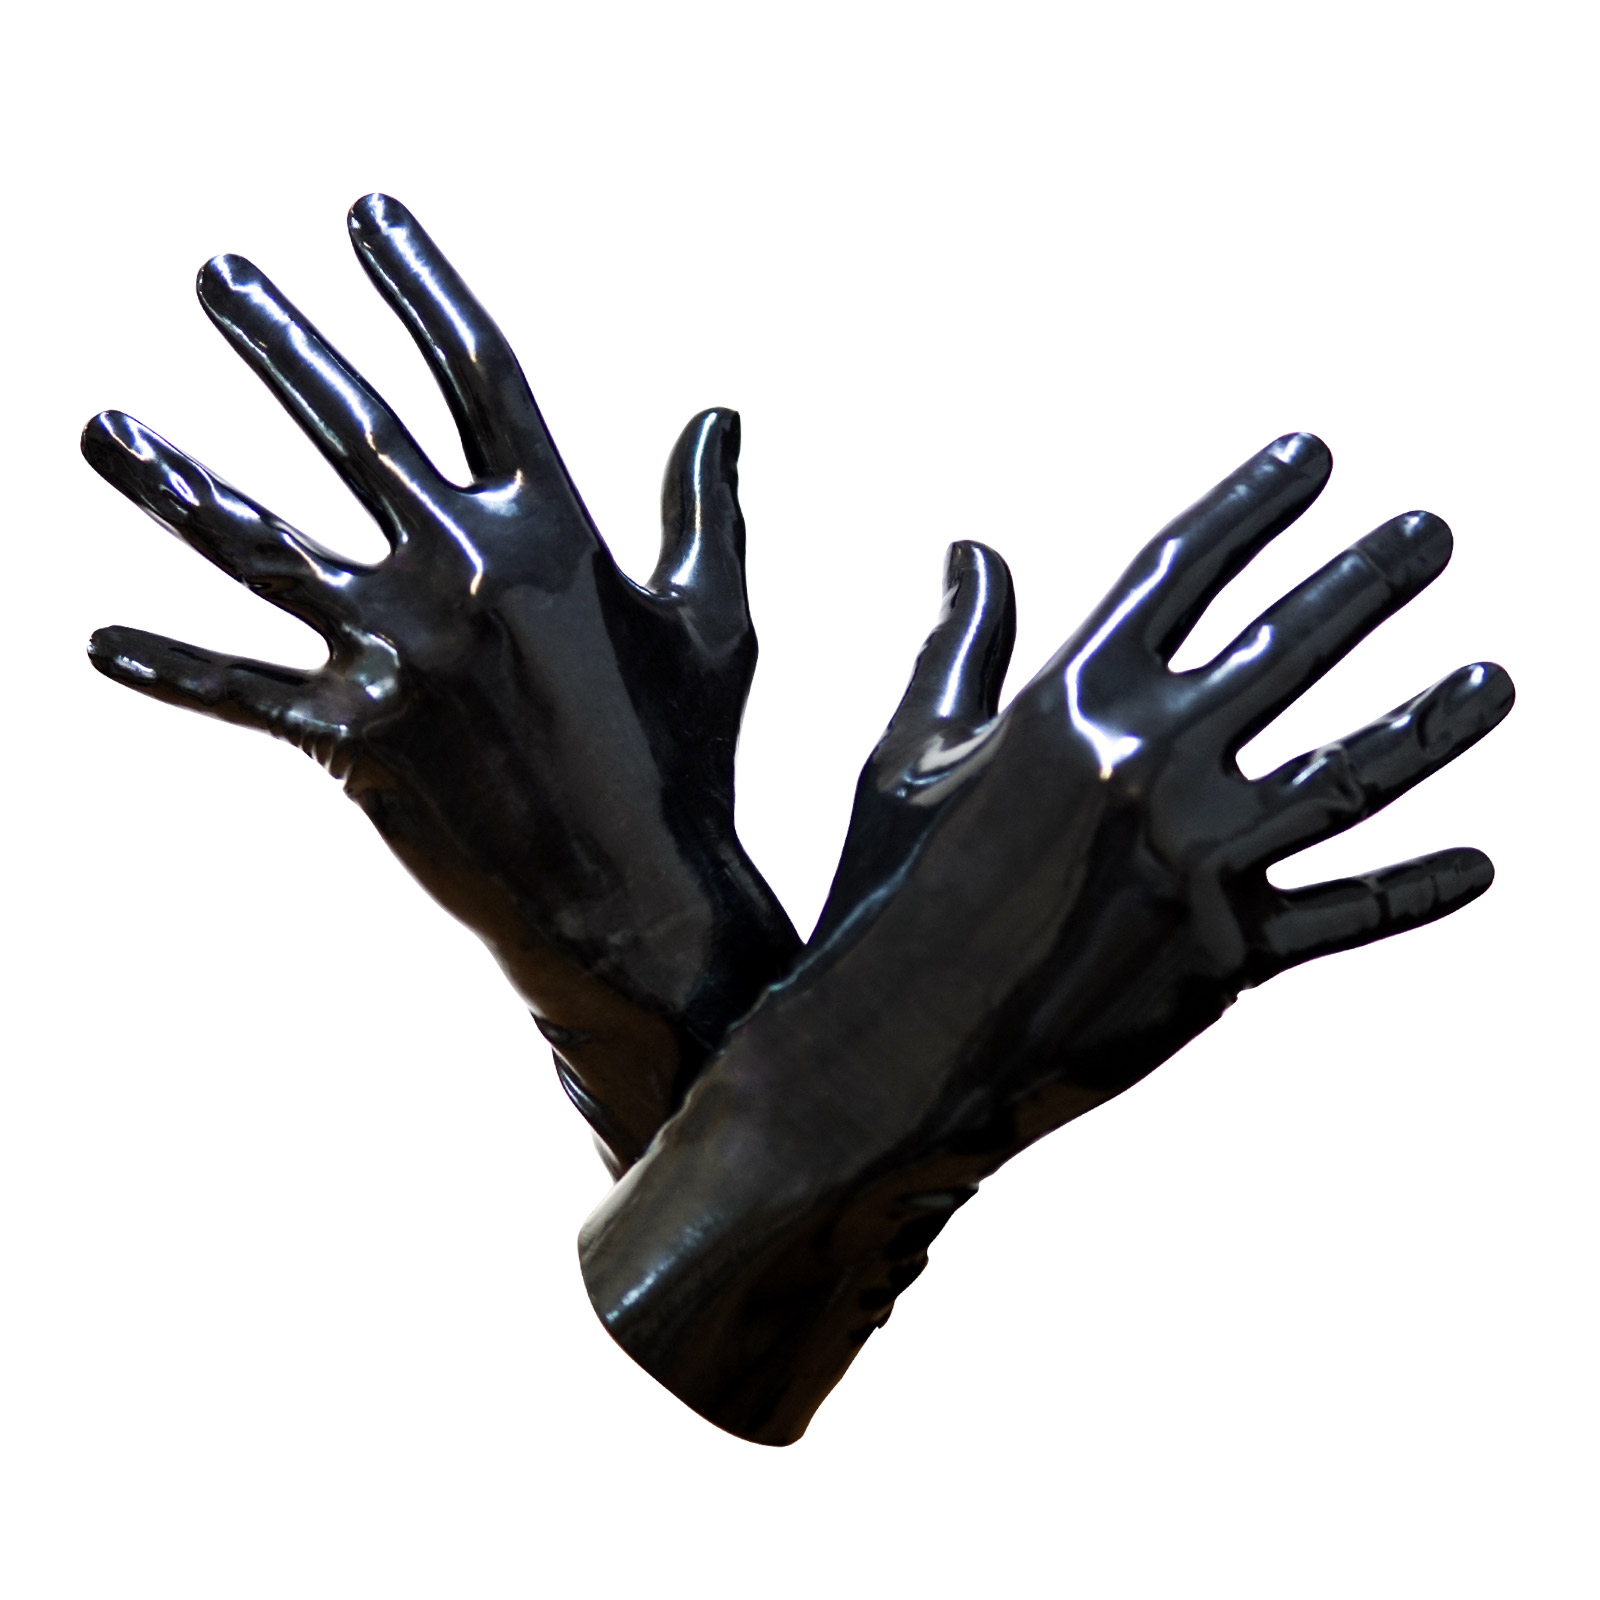 Toylie Latex Handschuhe «XS» schwarz, nahtlos, mit anatomischer Passform